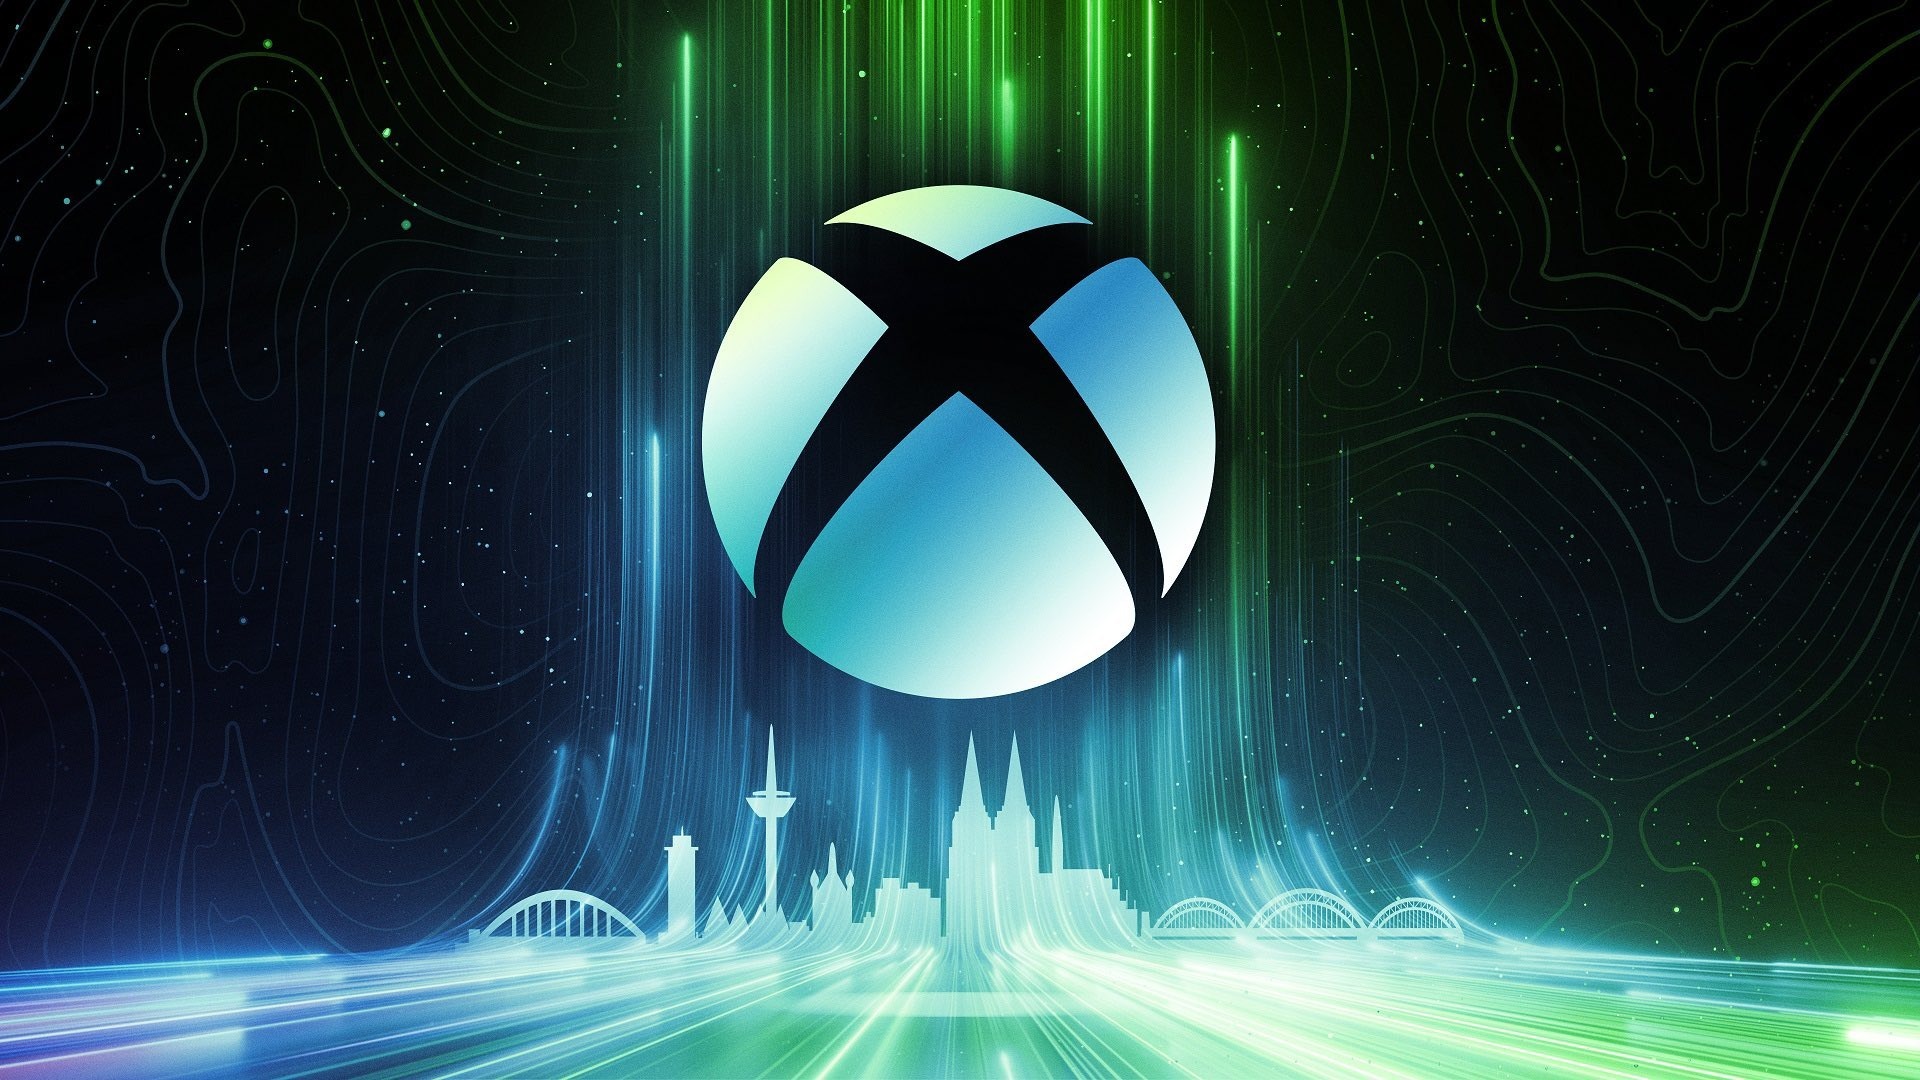 Microsoft-ը զեկուցել է Xbox-ի վաճառքի և եկամուտների անկման մասին